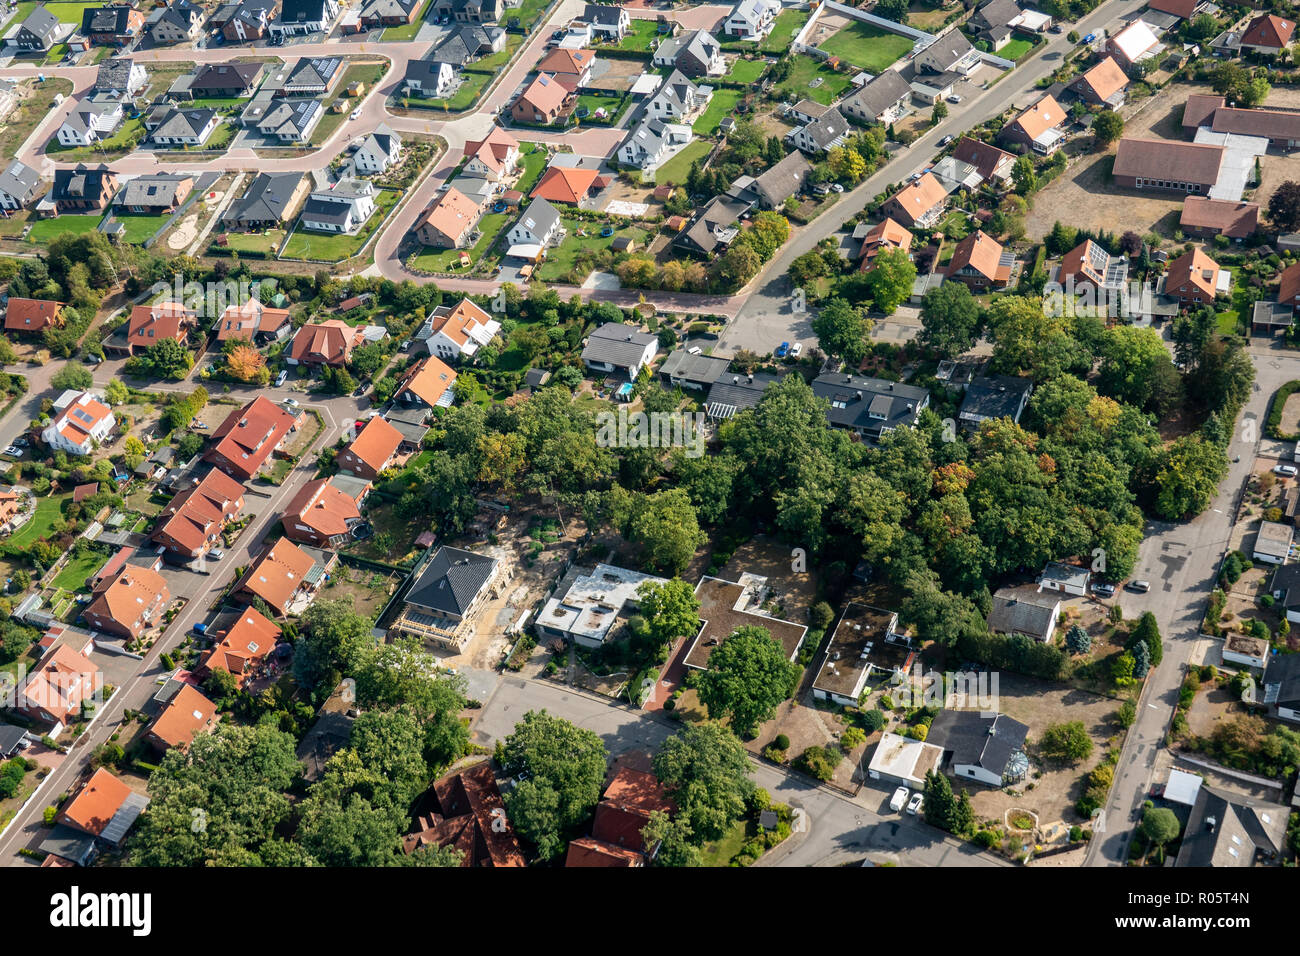 Photographie aérienne d'une banlieue allemande avec des maisons individuelles et un centre commercial Banque D'Images